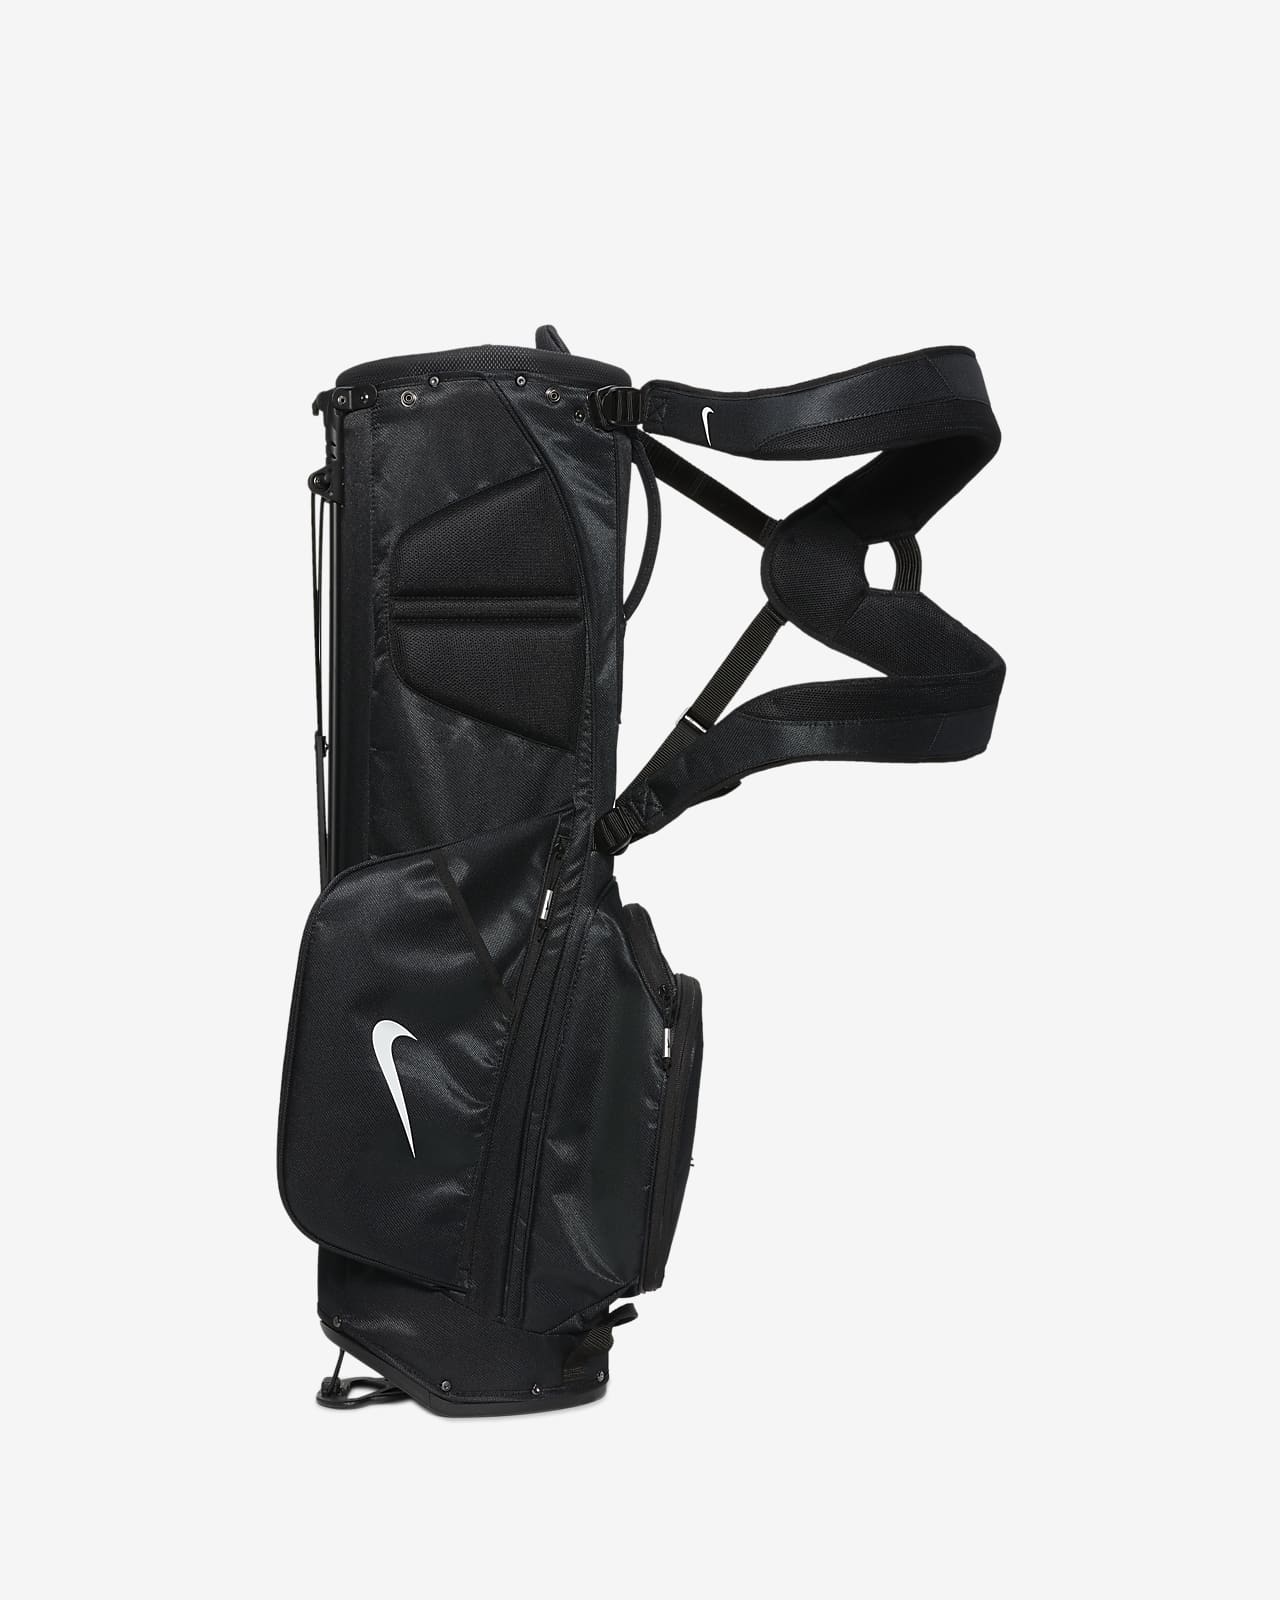 Componeren Verbeteren verkiezing Nike Sport Lite Golf Bag. Nike.com